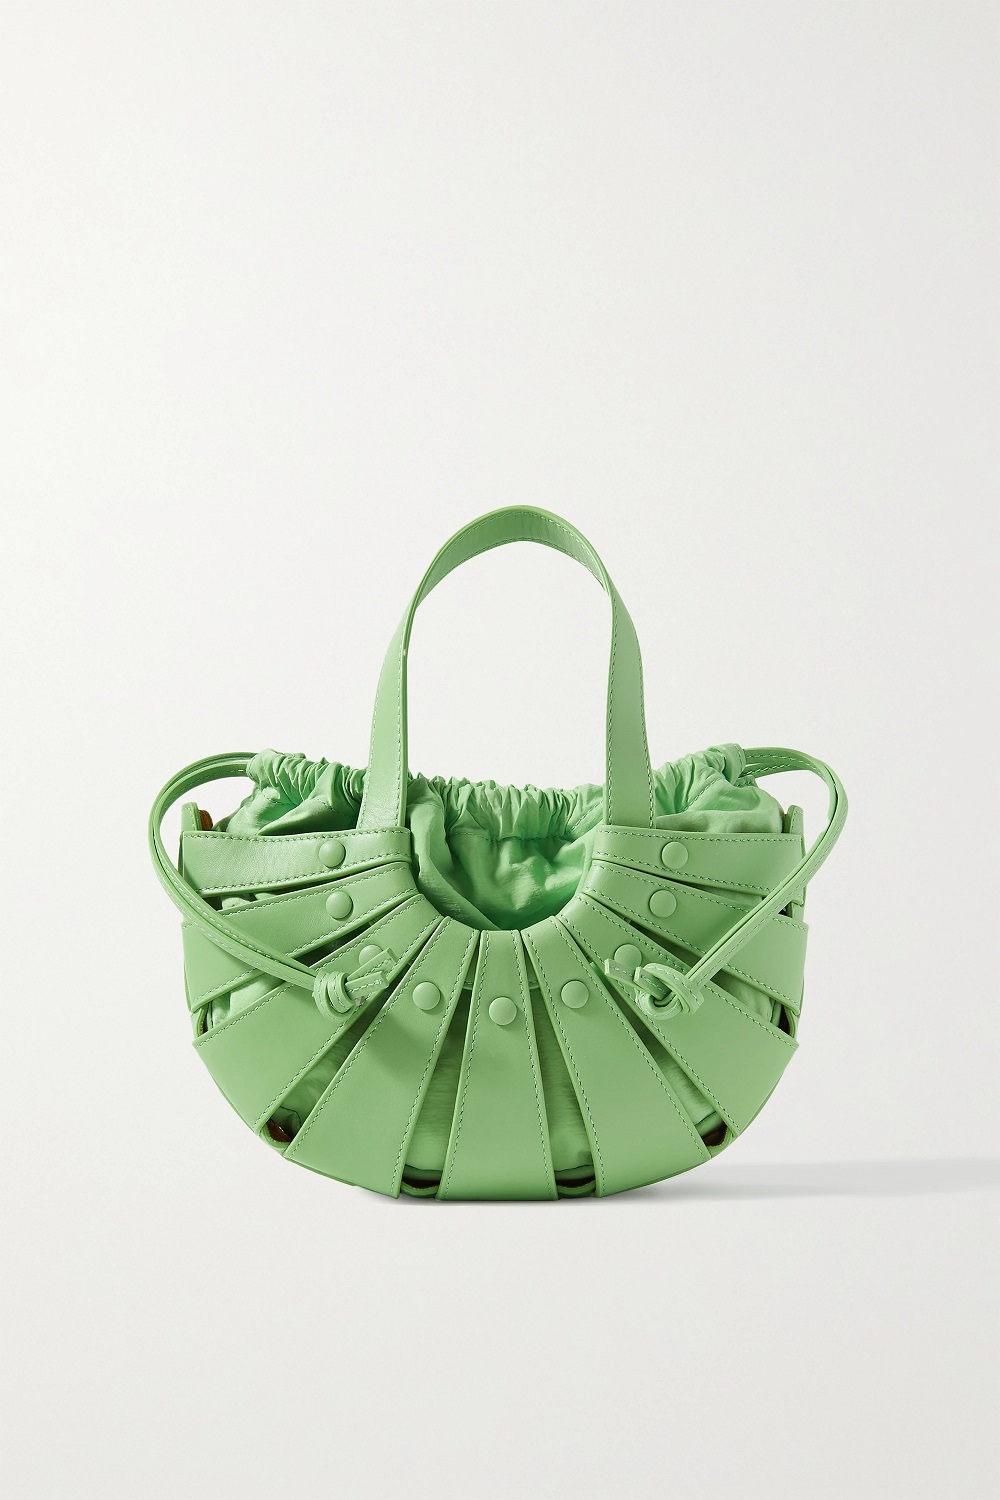 Bottega Veneta torbe u boji proljeće ljeto 2021.  